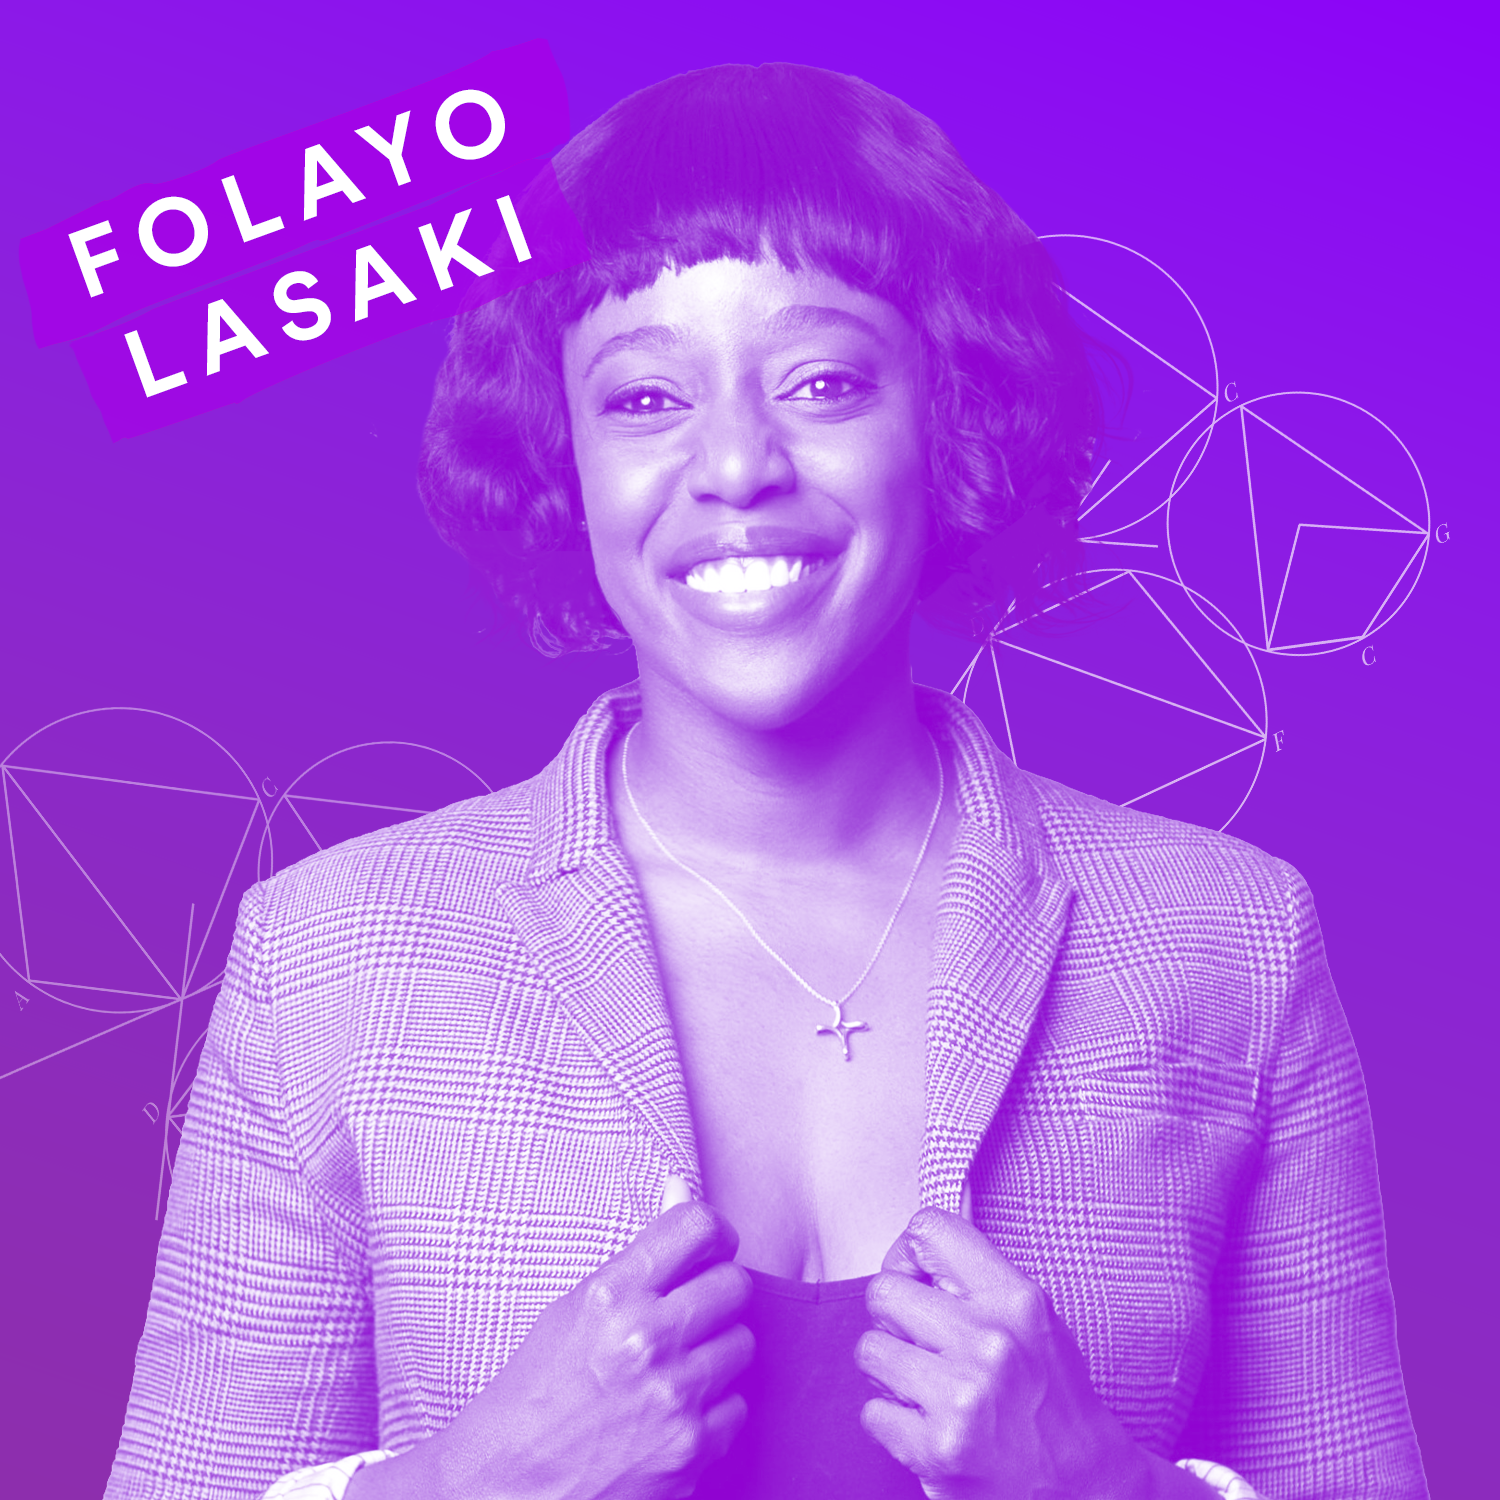 Folayo Lasaki headshot